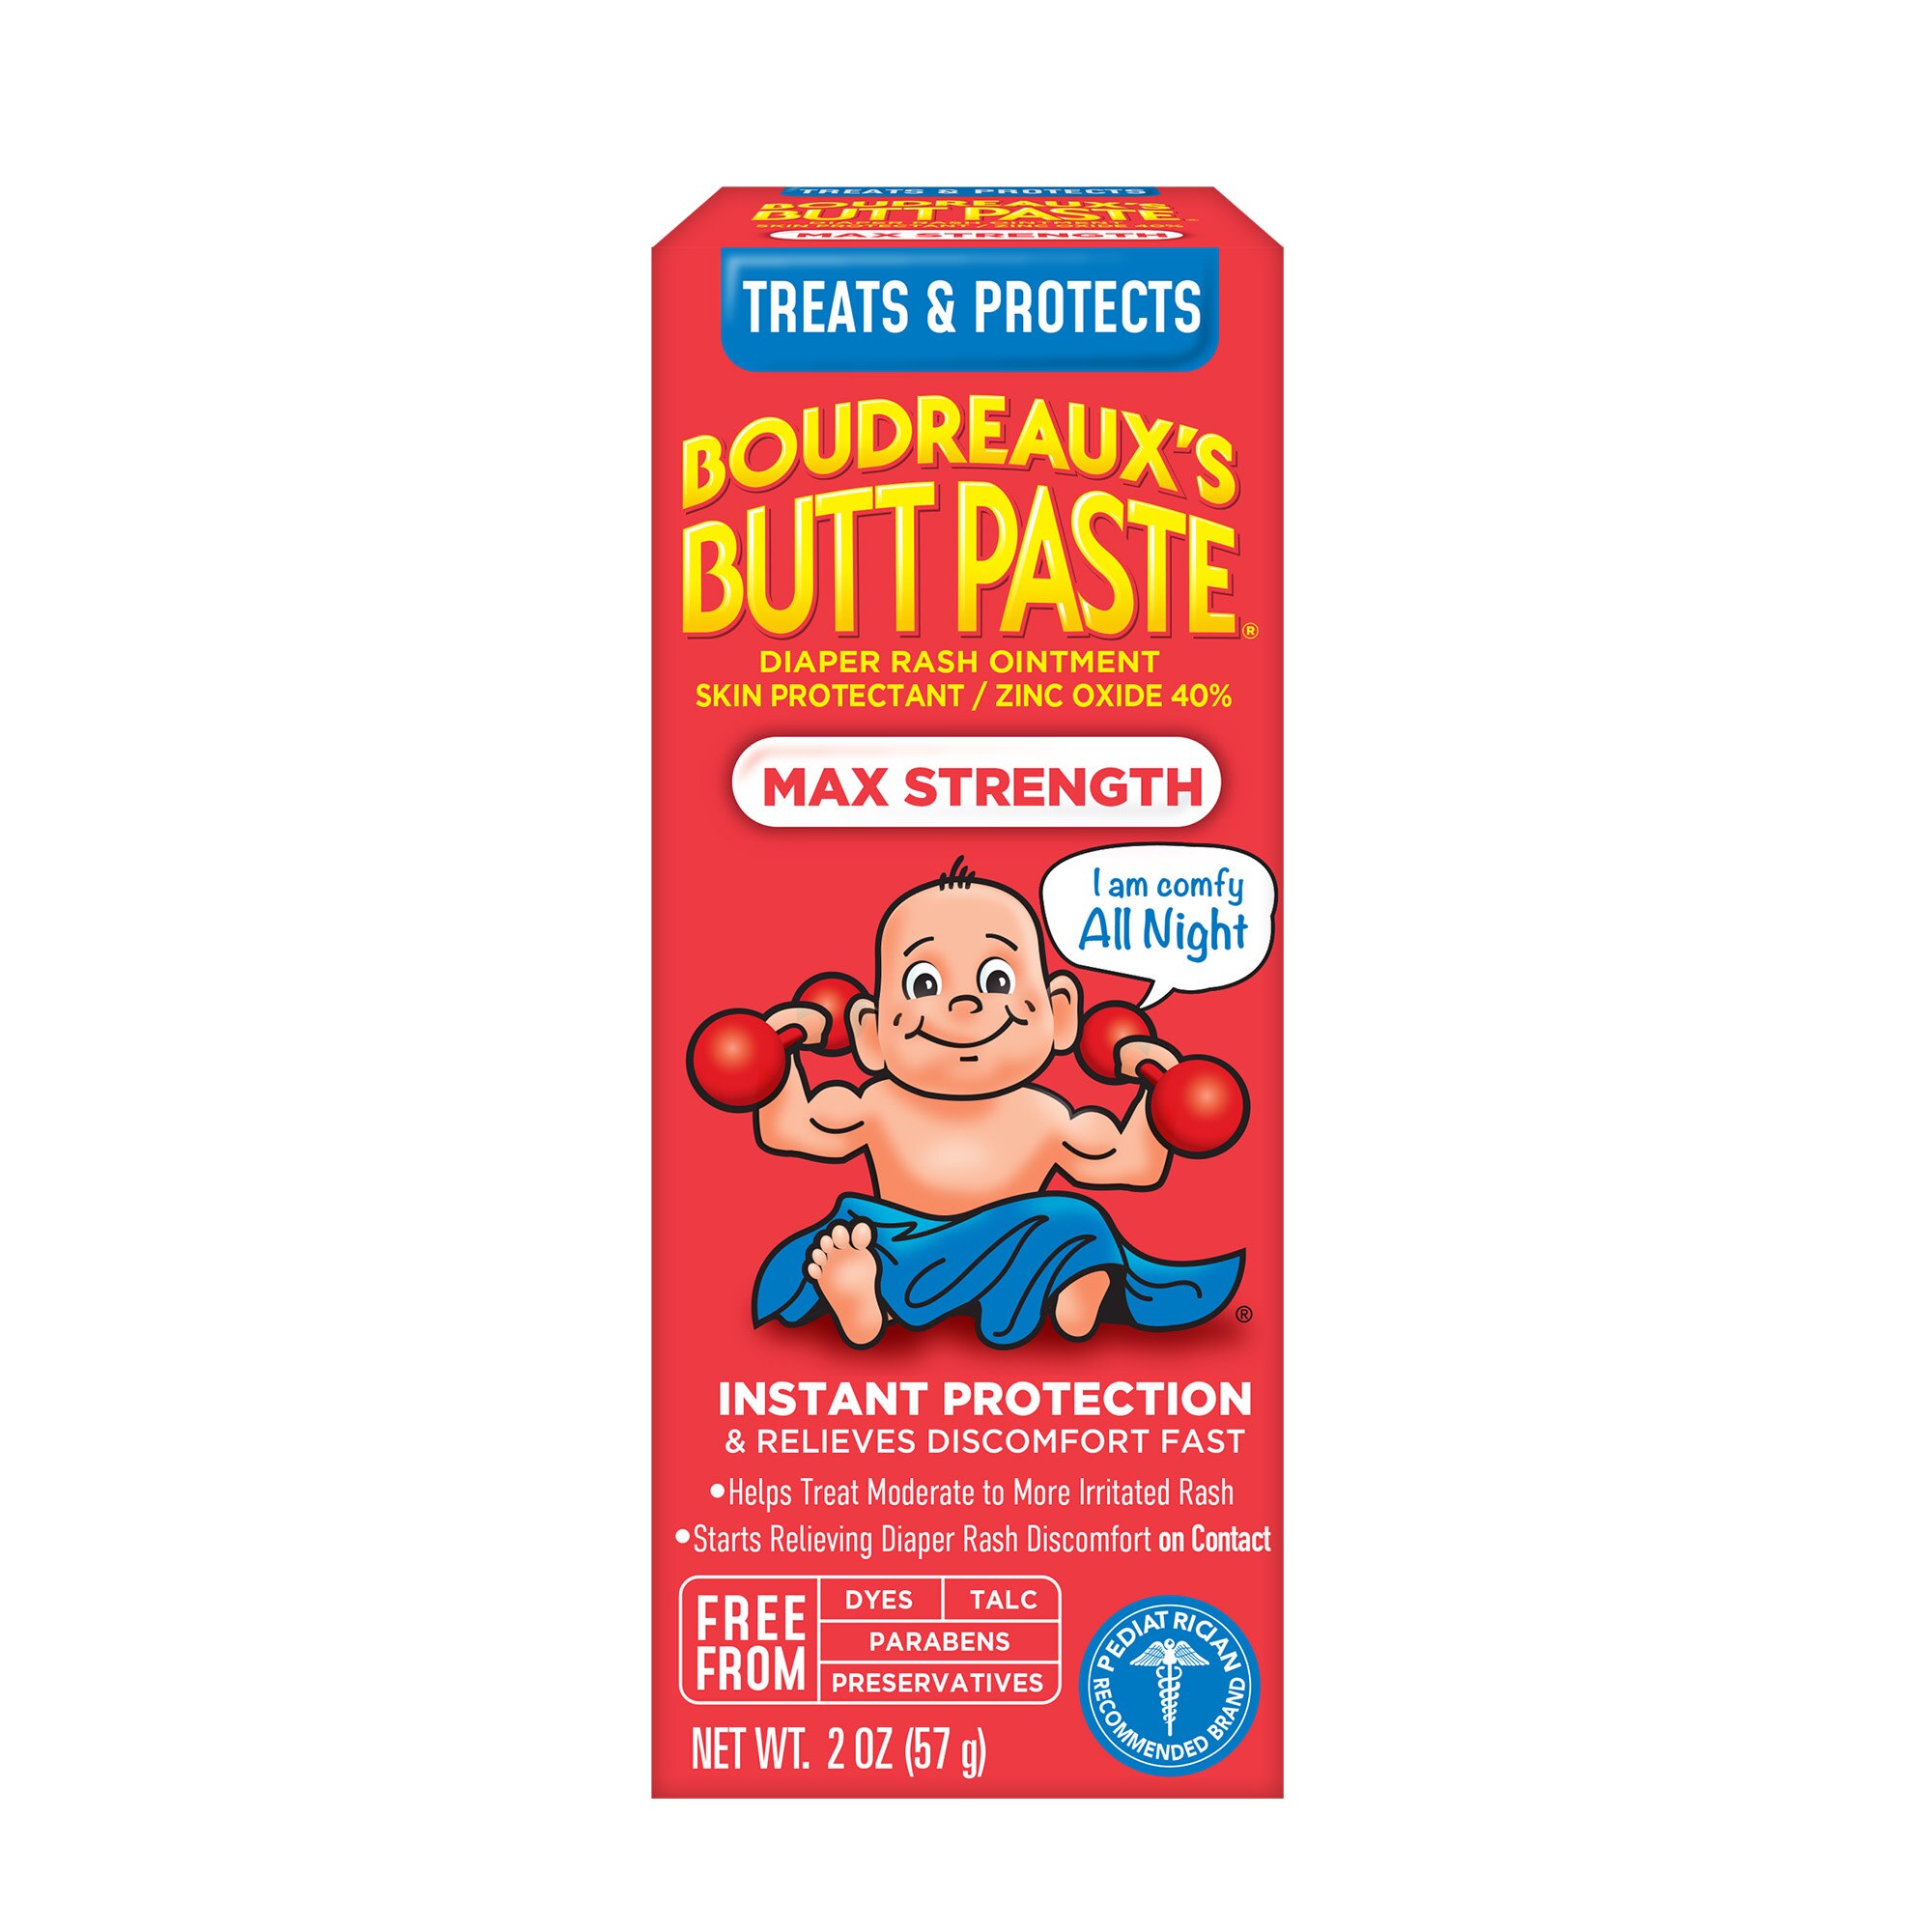 Boudreaux's Butt Paste Diaper Rash Ointment Maximum Strength